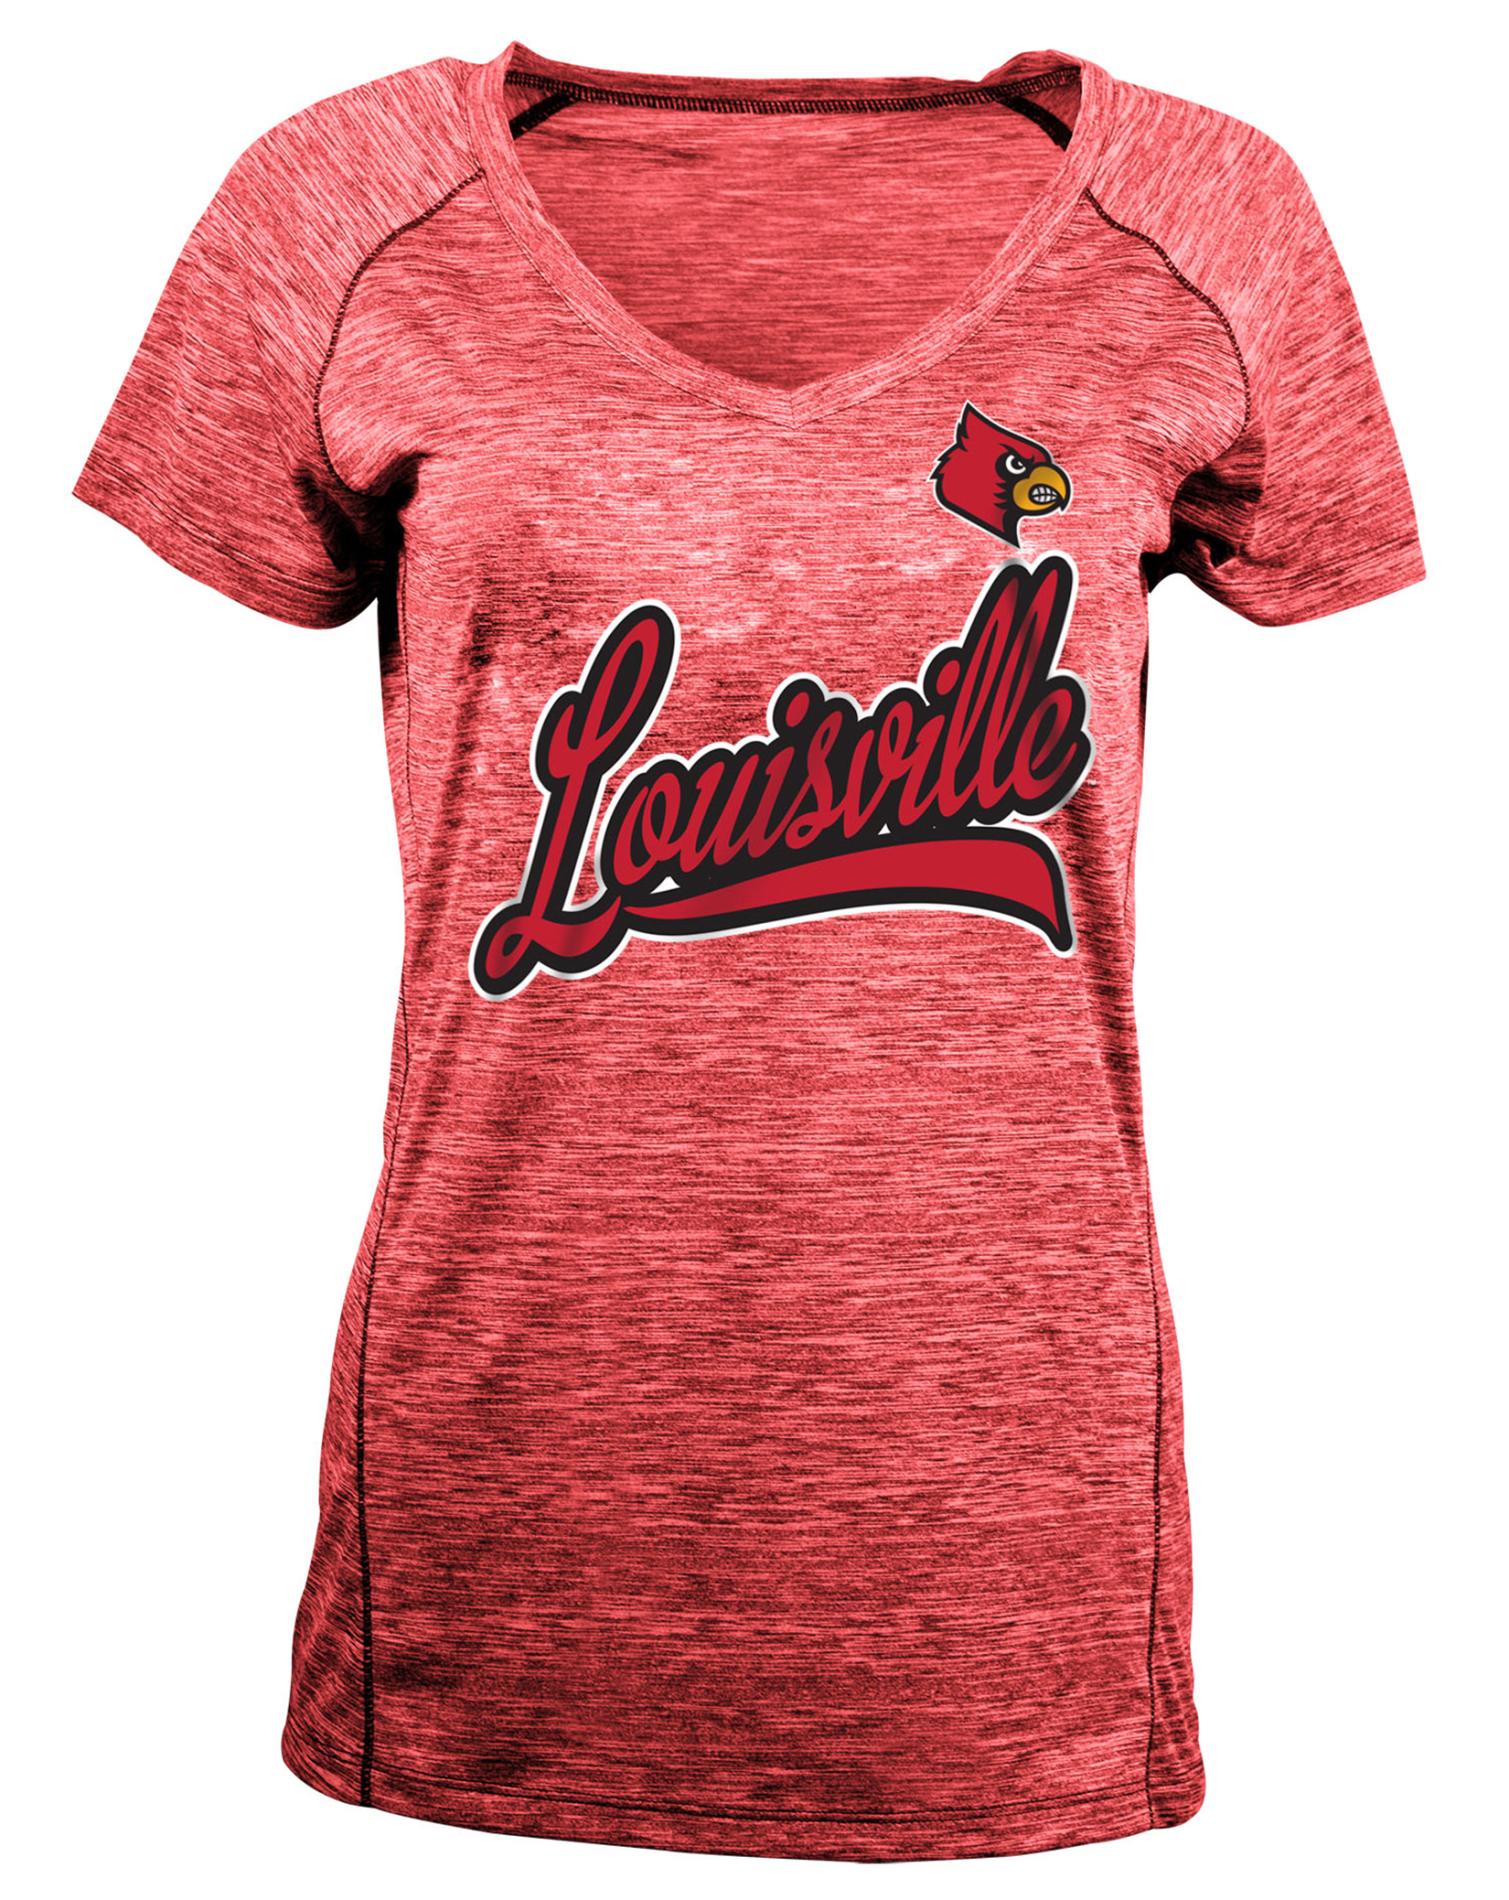 NCAA Women's Performance Shirt - University of Louisville Cardinals